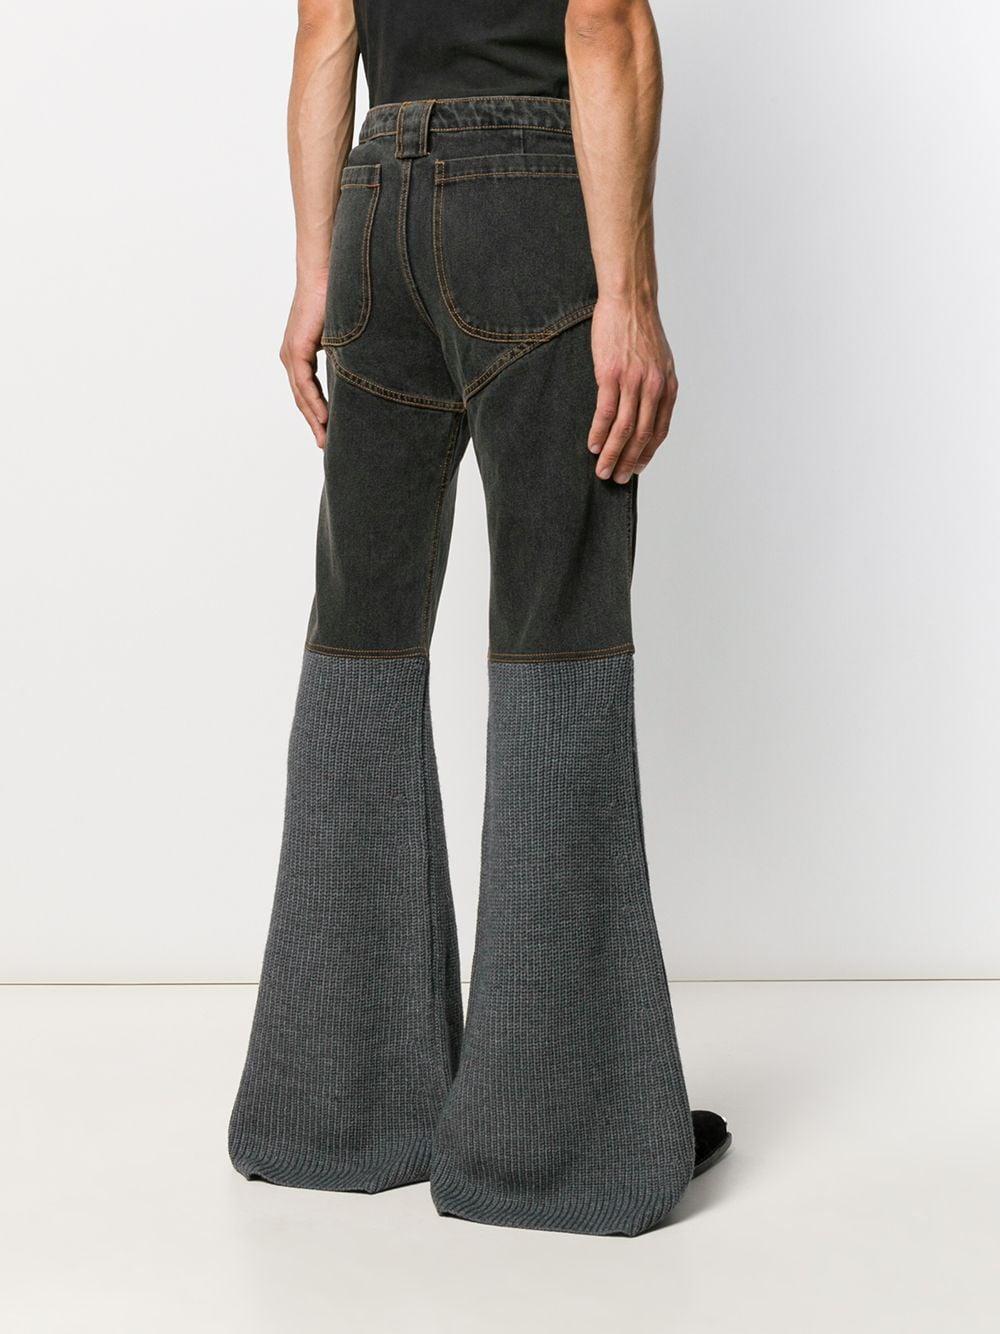 Telfar Denim Knitted Panel Jeans in Grey (Gray) for Men - Lyst